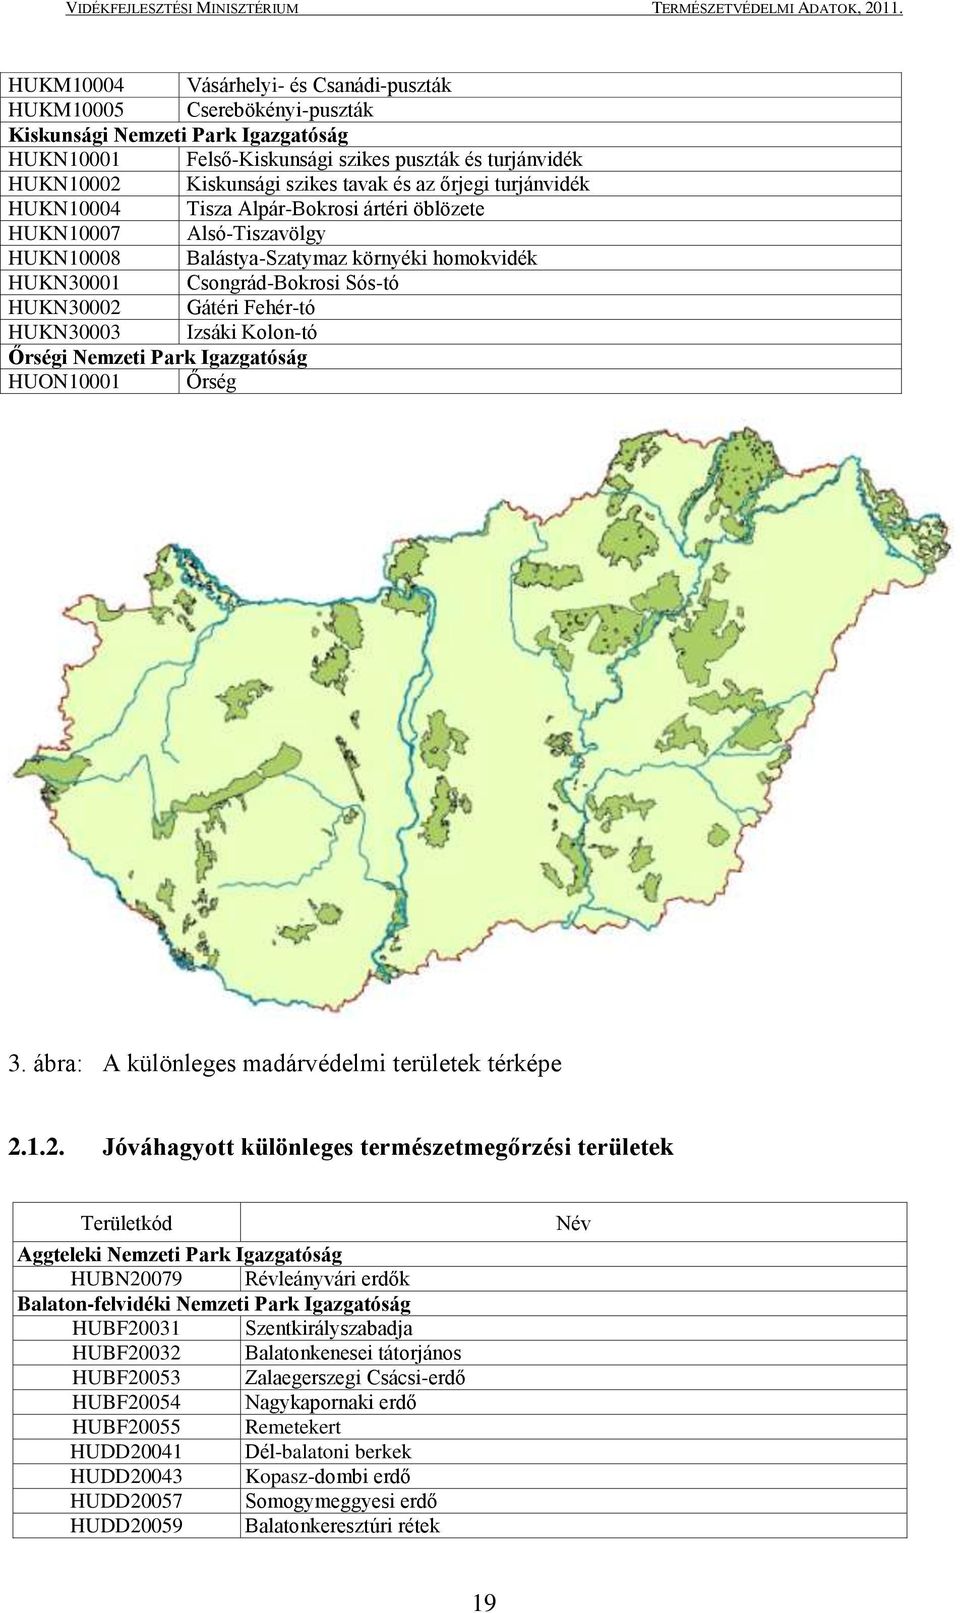 Fehér-tó HUKN30003 Izsáki Kolon-tó Őrségi Nemzeti Park Igazgatóság HUON10001 Őrség 3. ábra: A különleges madárvédelmi területek térképe 2.